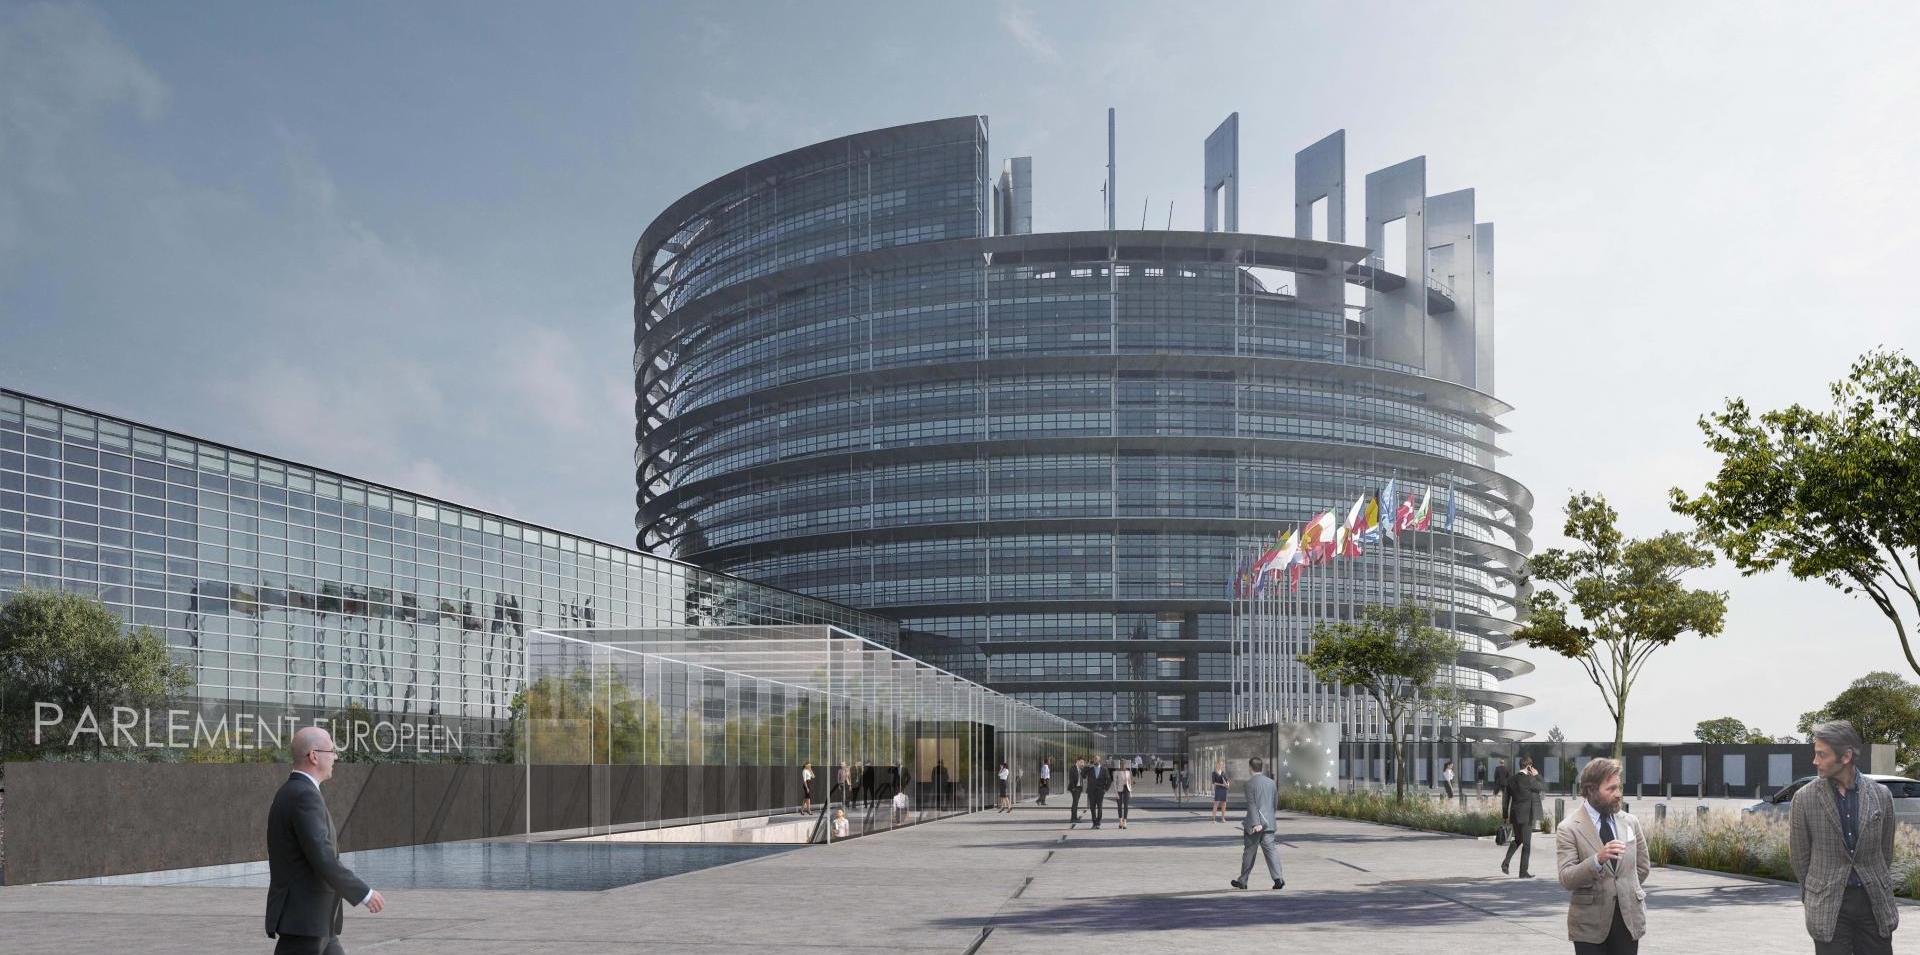 pavillon d’accueil louise weiss – parlement européen